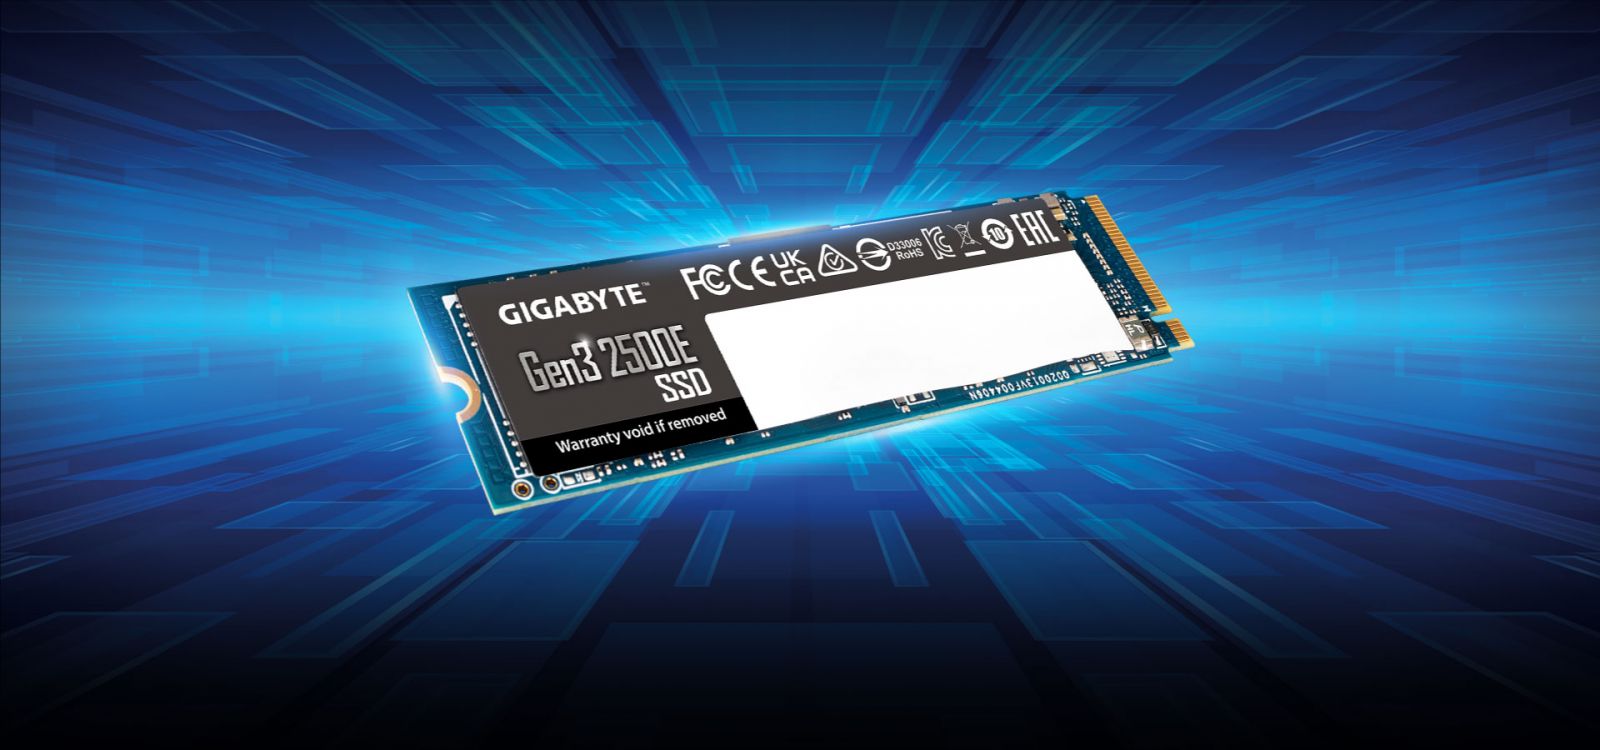 SSD M.2 GIGABYTE G325E 1TB Gen3 2500E-3 - VI TÍNH NGUYỄN THẮNG